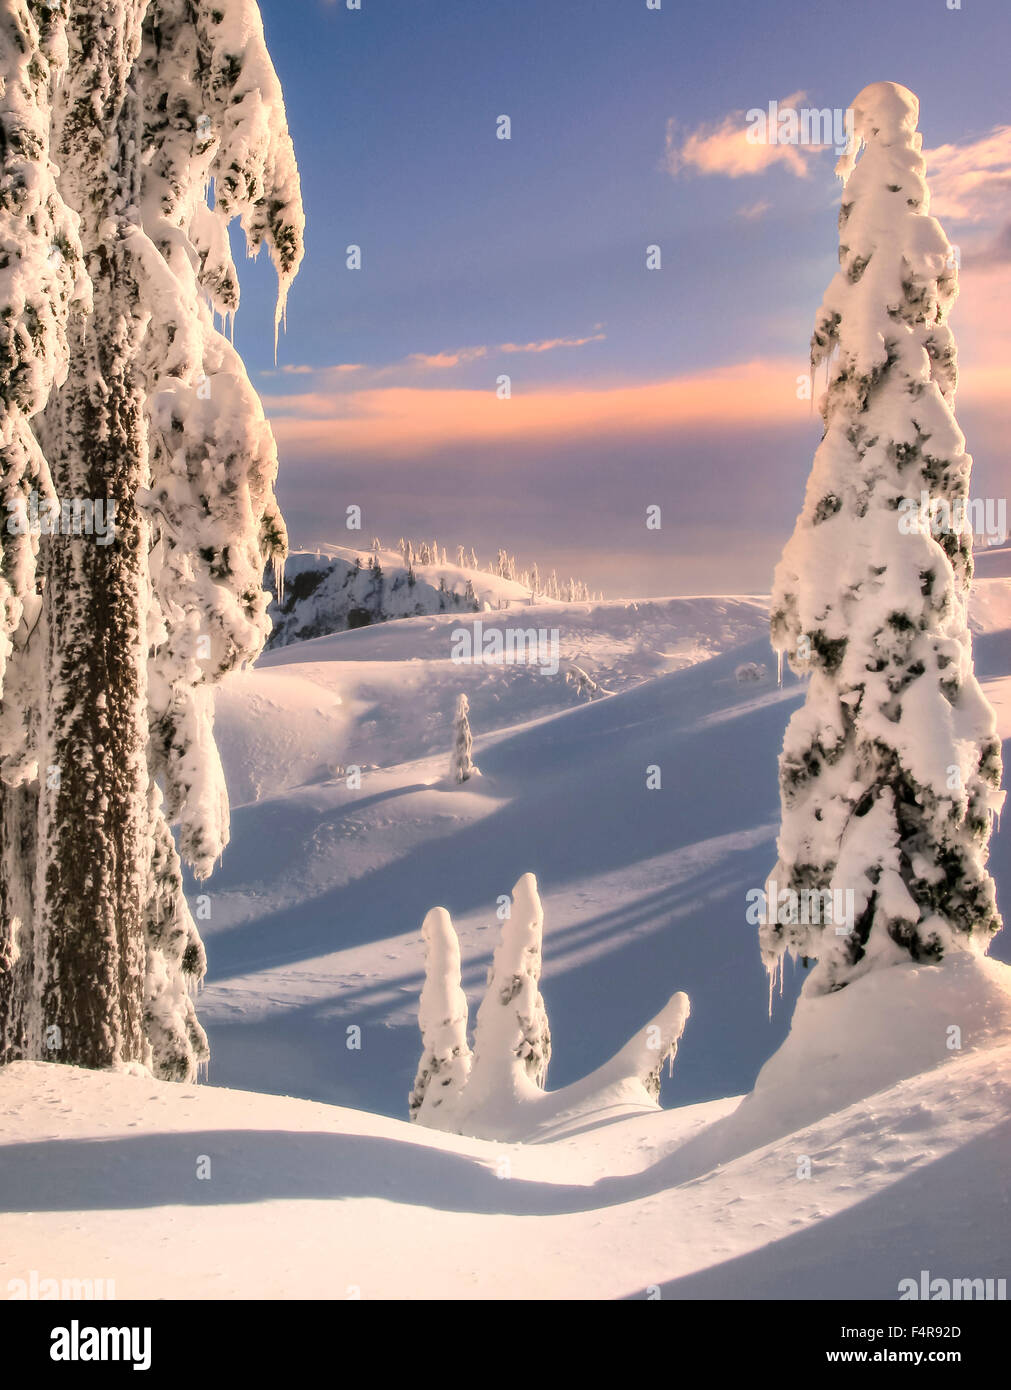 Kanada, British Columbia, Schnee, Schnee, Bäume, rollenden Hügeln, blauer Himmel, Winter, Abend, Sonnenuntergang, goldene Stunde Stockfoto